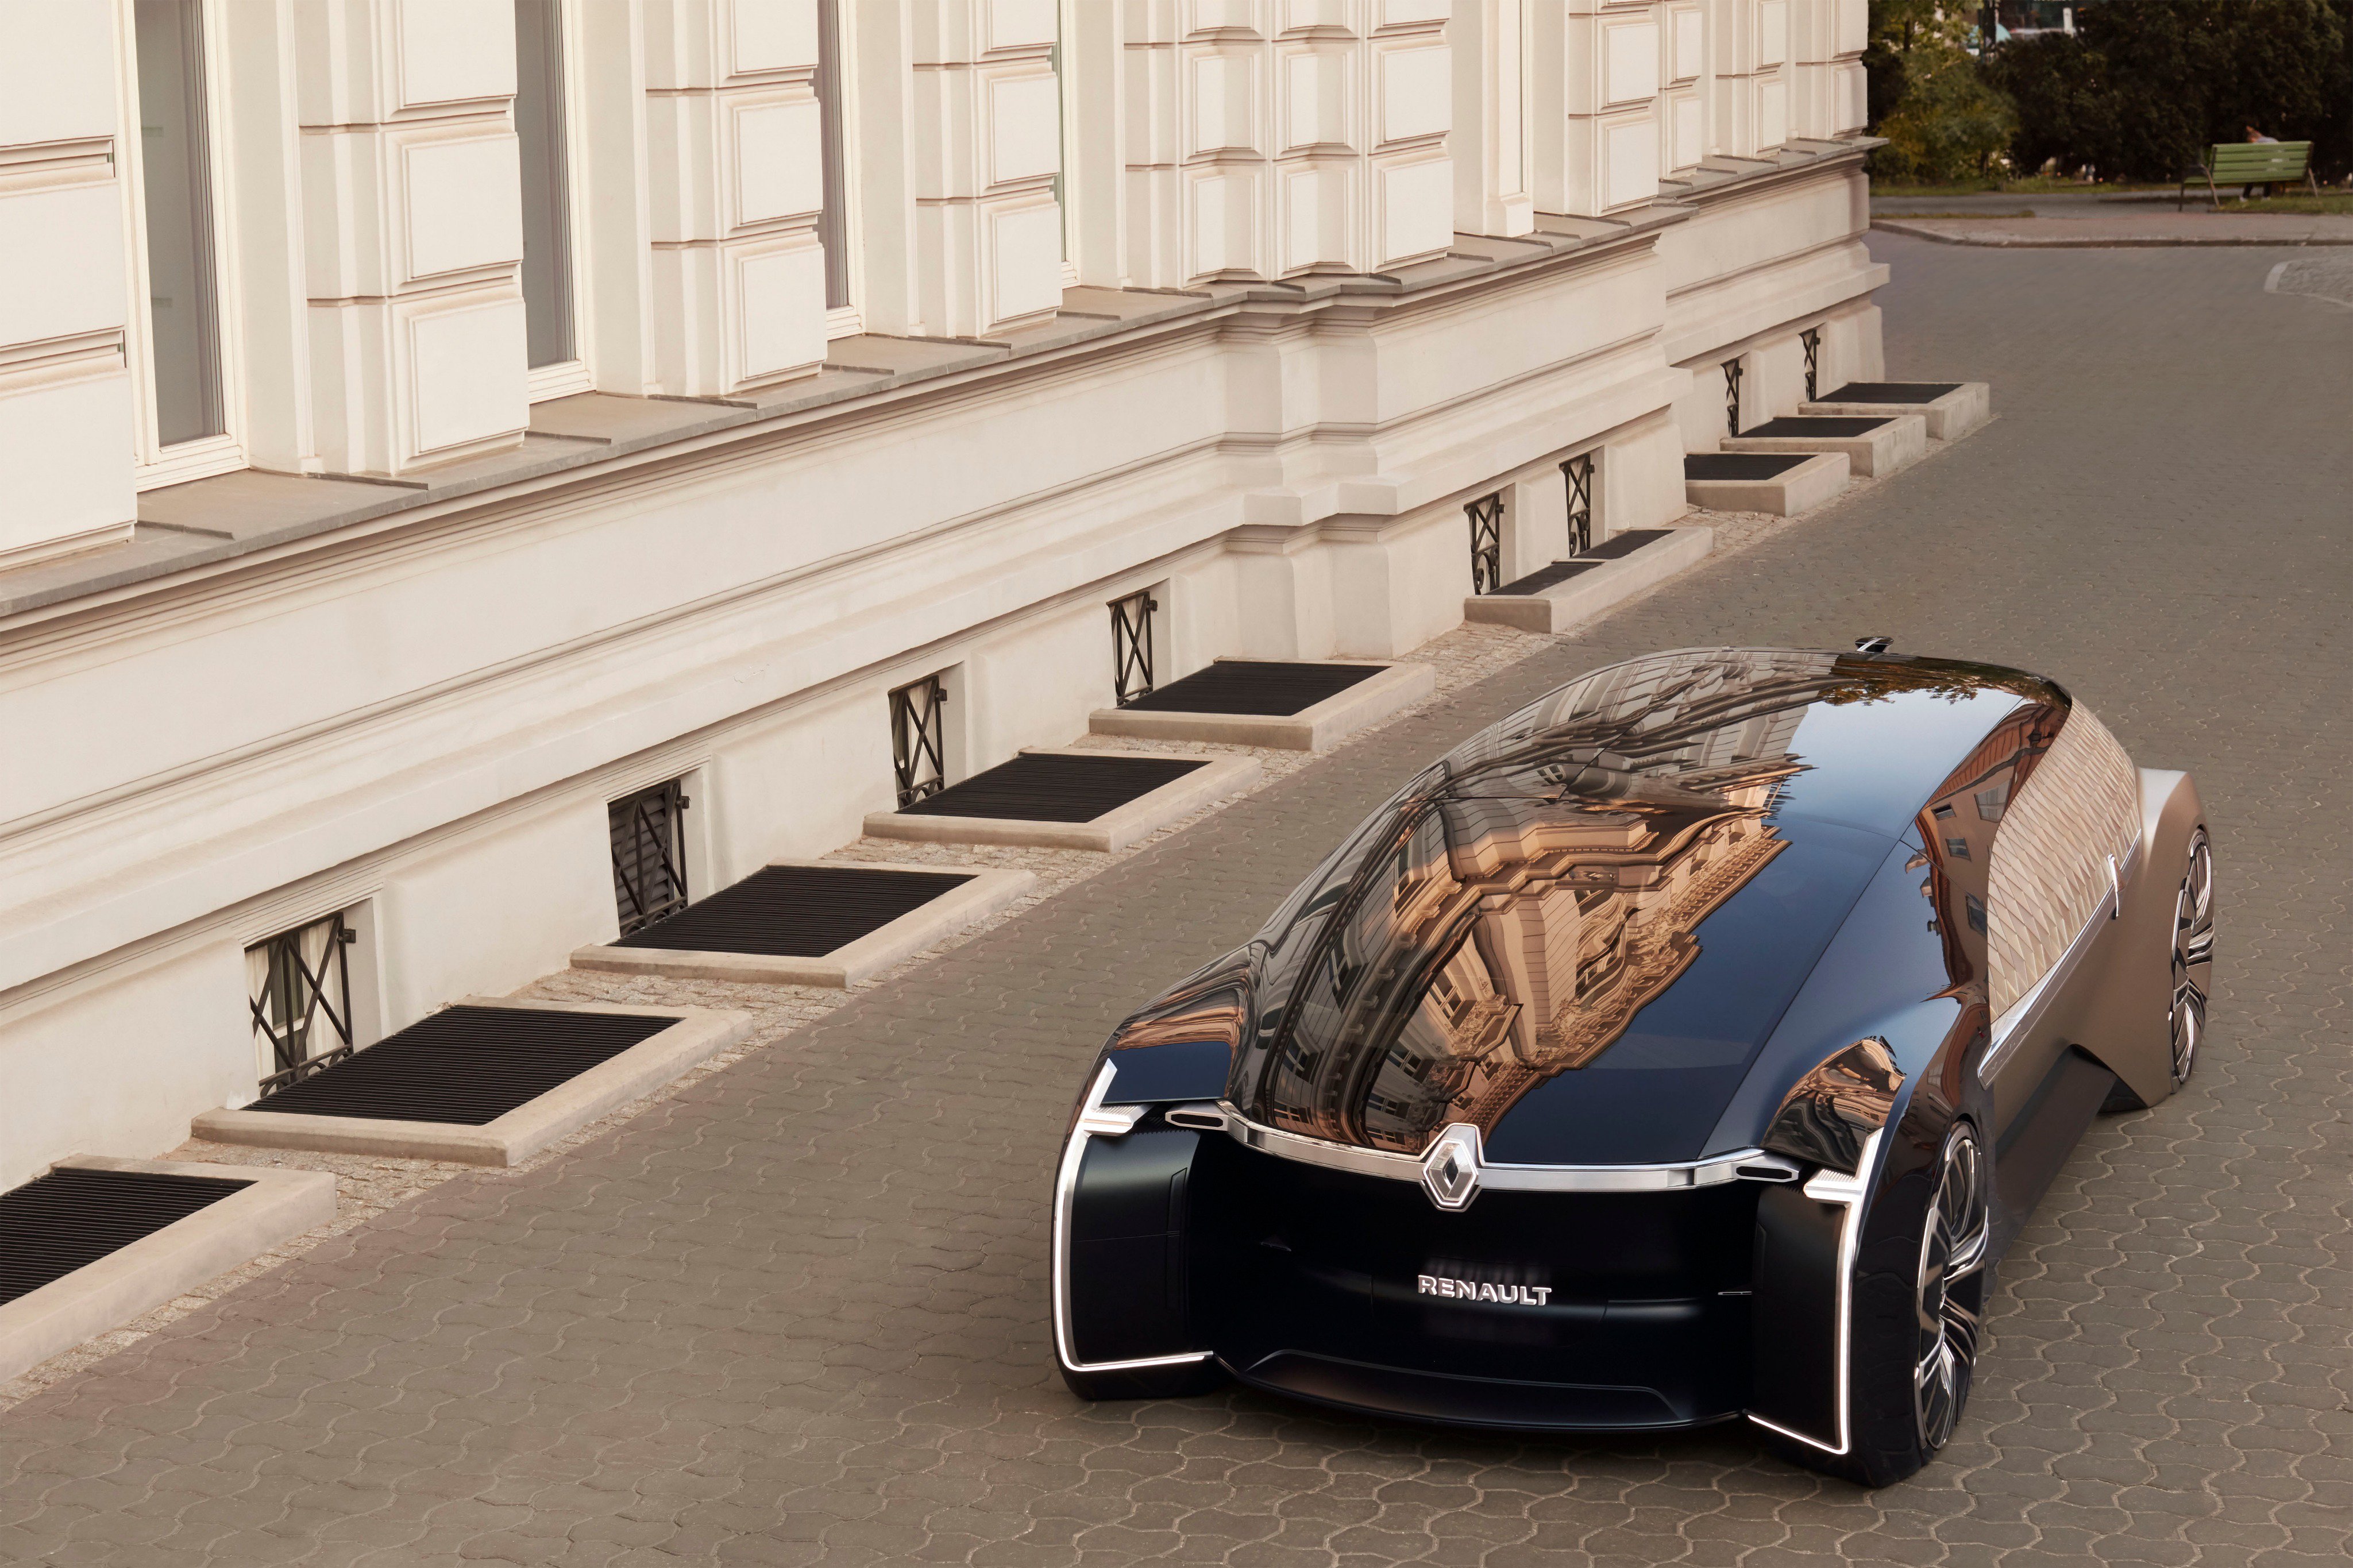 Renault je predstavio EZ-Ultimo, robotizirano vozilo za koje vjeruju da predstavlja budućnost luksuznog prijevoza. Radi se ustvari o vozećem dnevnom boravku, koji ne bi trebao imati volan, s obzirom na to da je posve autonoman. Ljudi bi samo trebali ući, opustiti se i reći kuda žele ići.